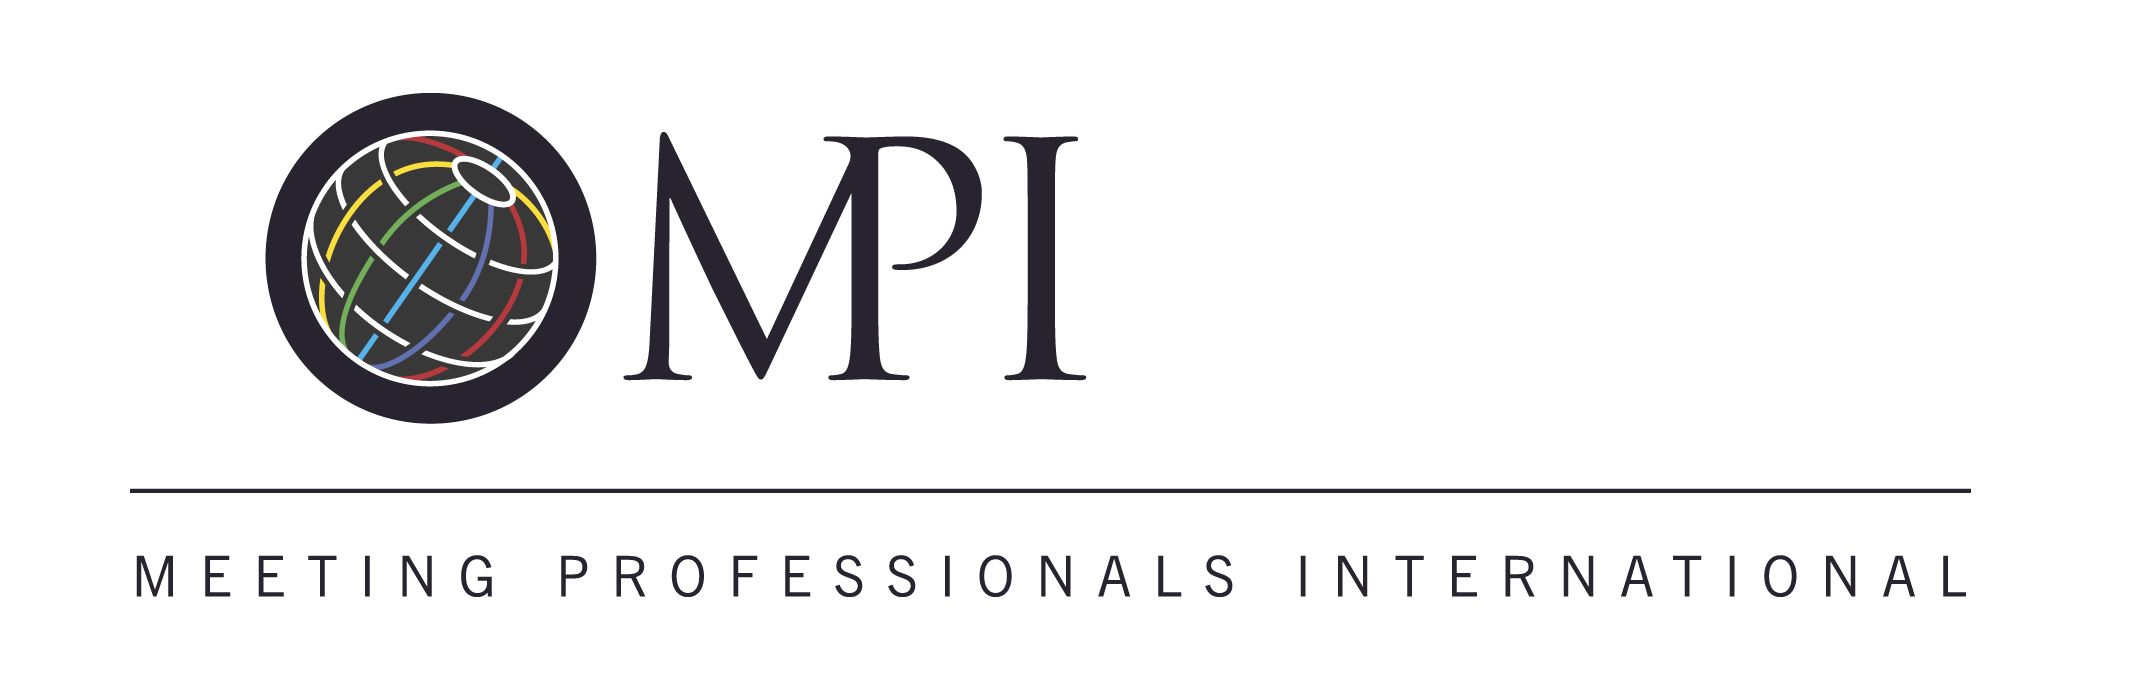 MPI Logo - MPI LOGO and Conventions PEI